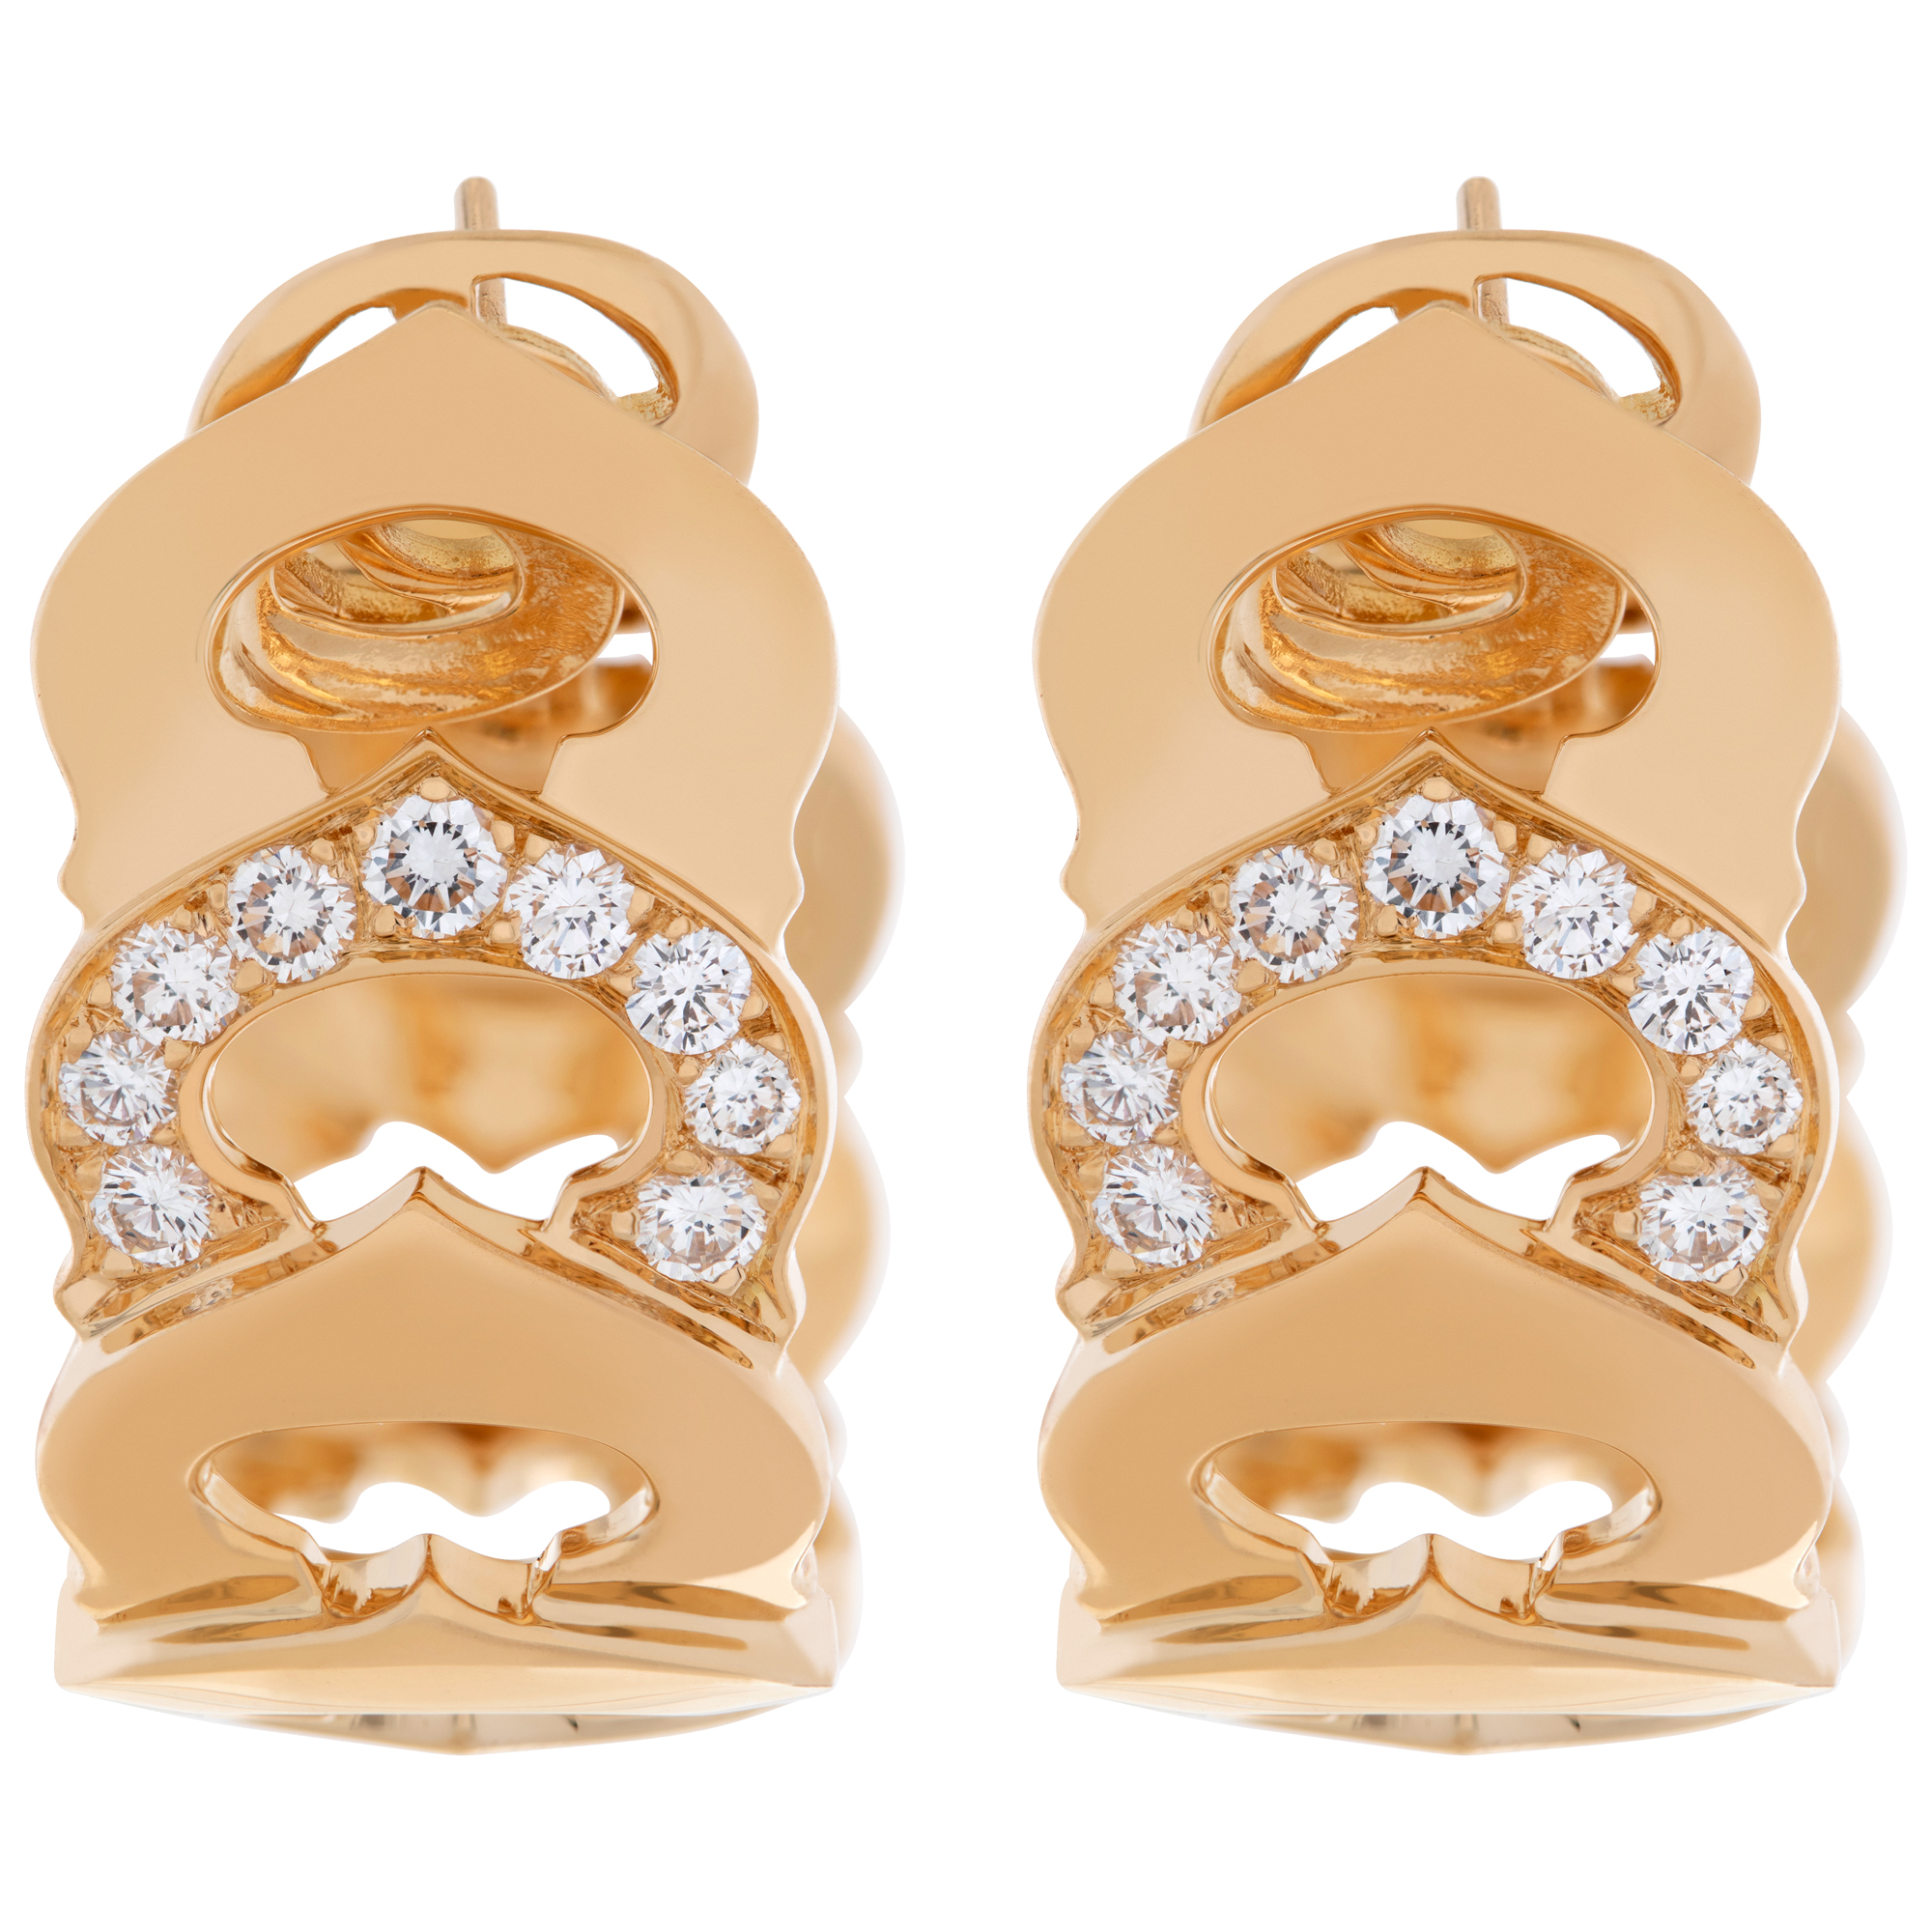 Cartier 'C de Cartier' motif hoop earring clips with 1.26 carats in diamonds